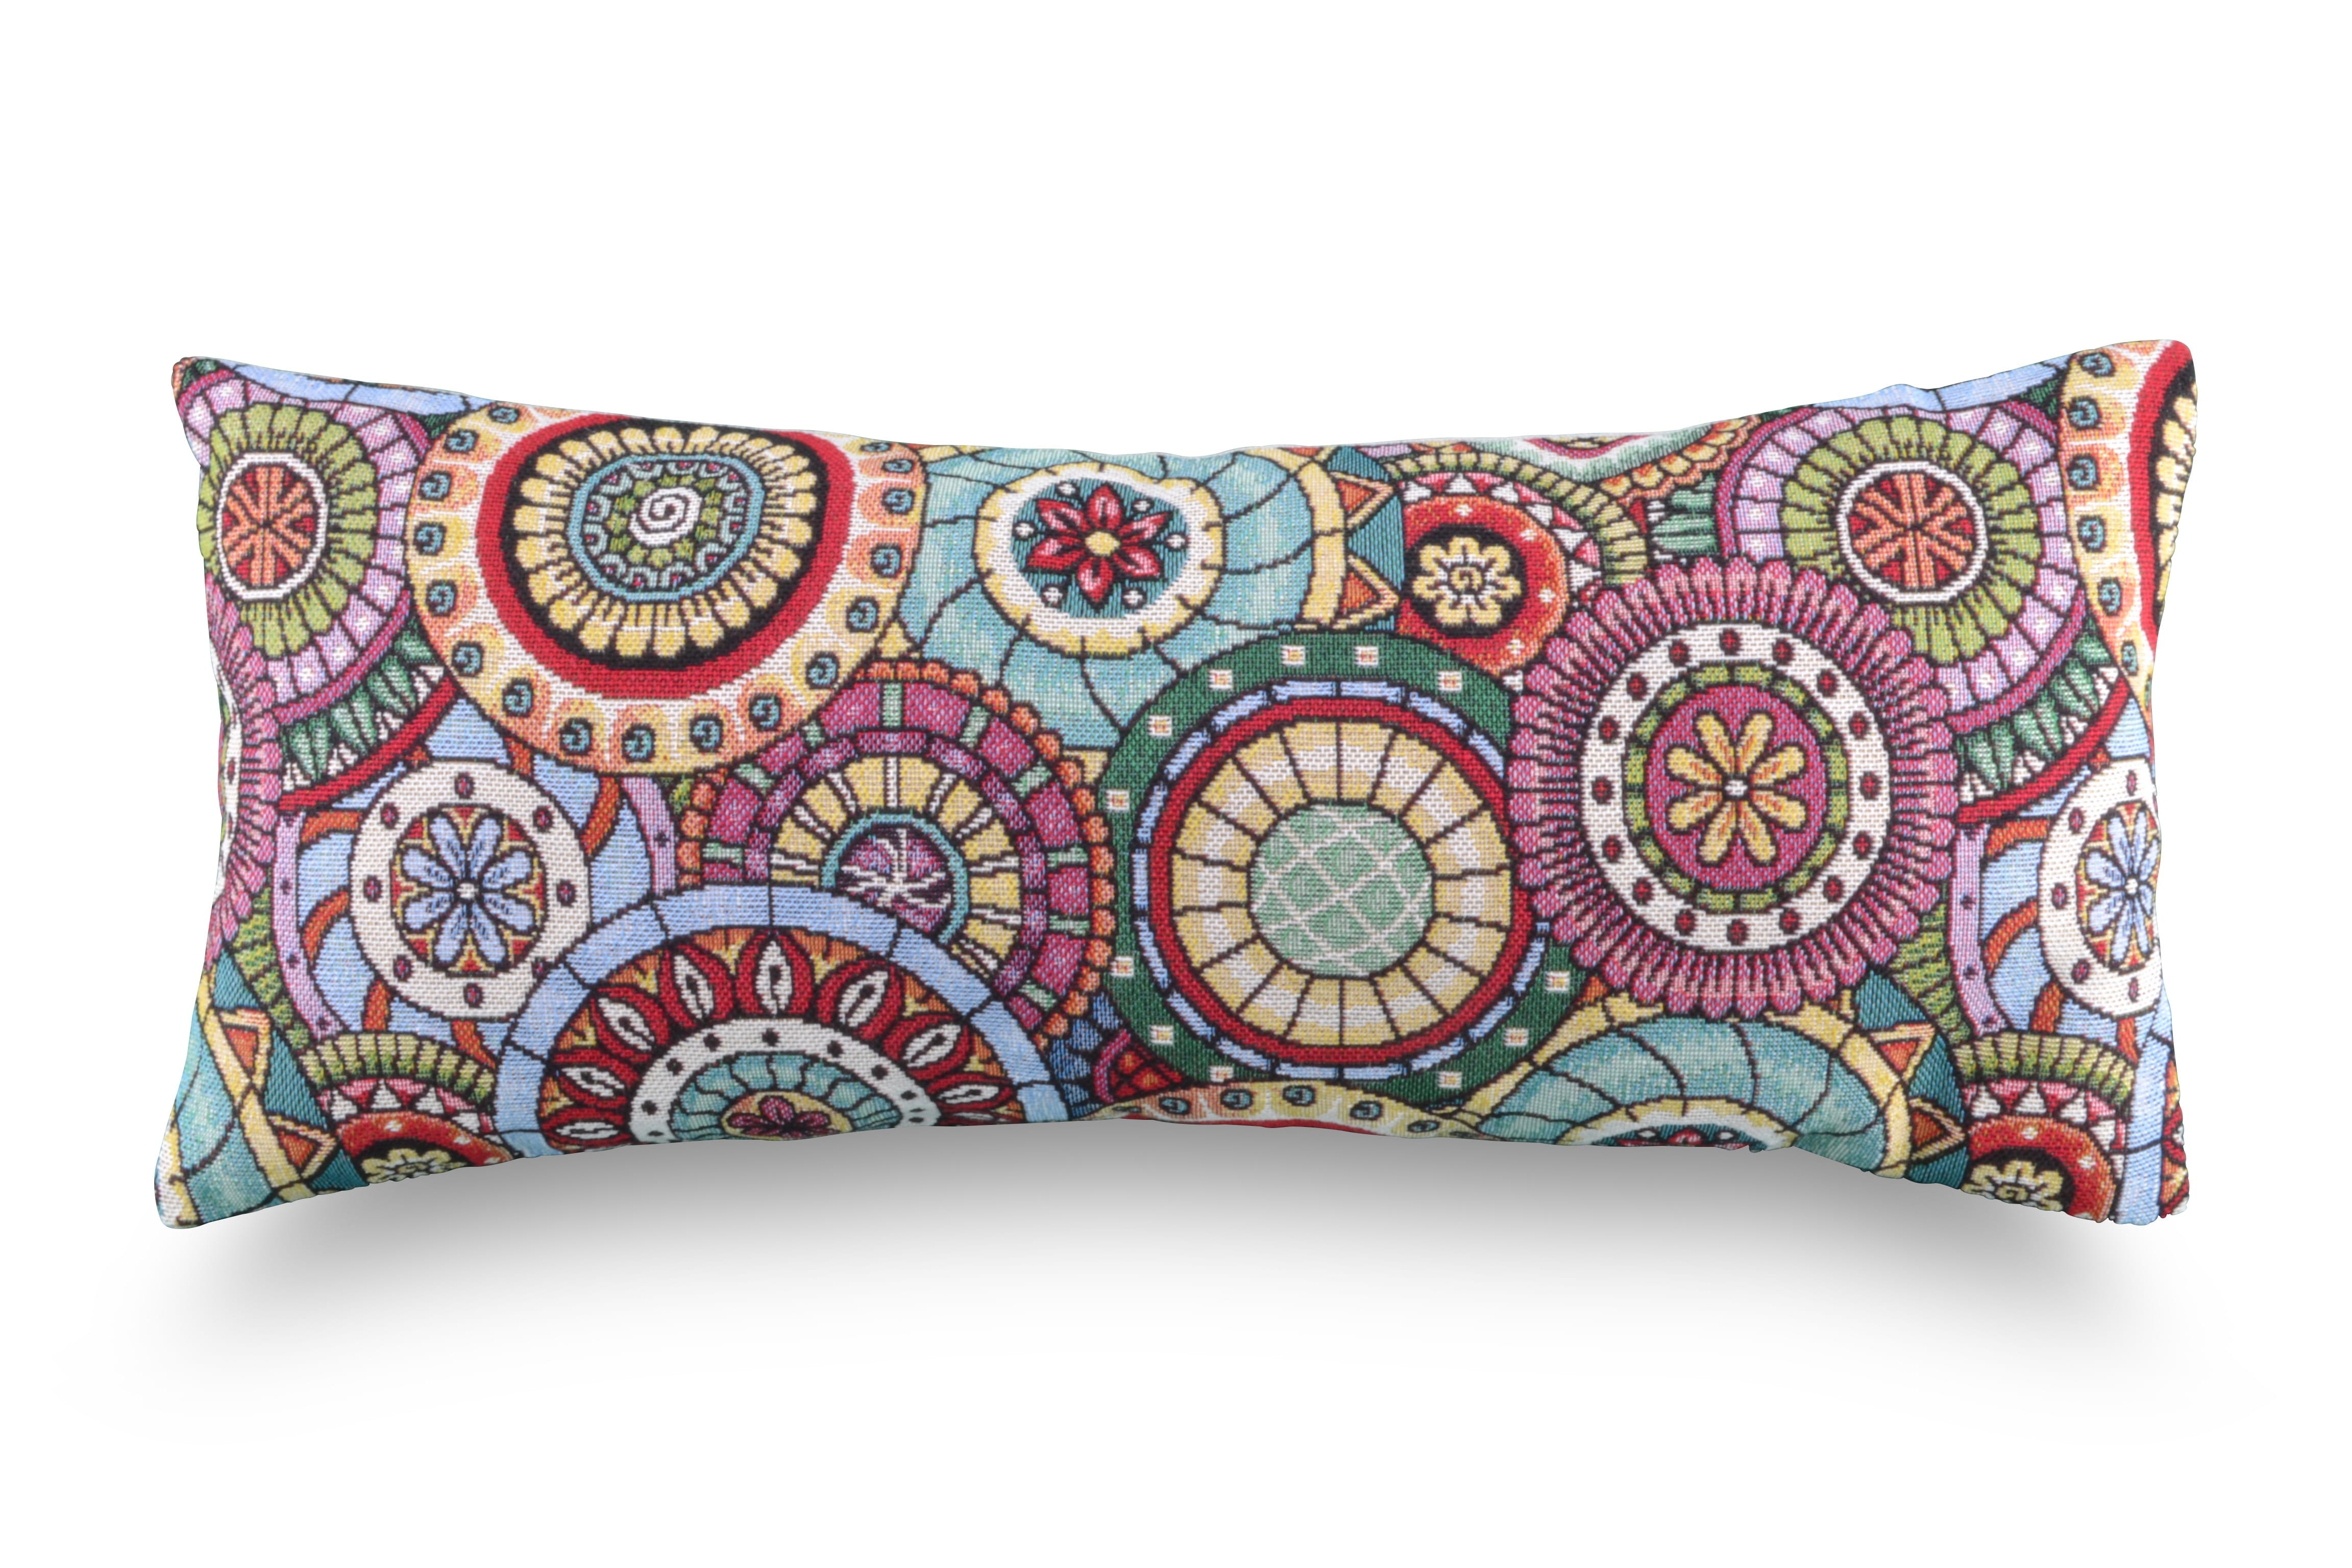 Zafu Meditation Cushion - Hemp, Round, Mandala Design - Made in USA – Bean  Products